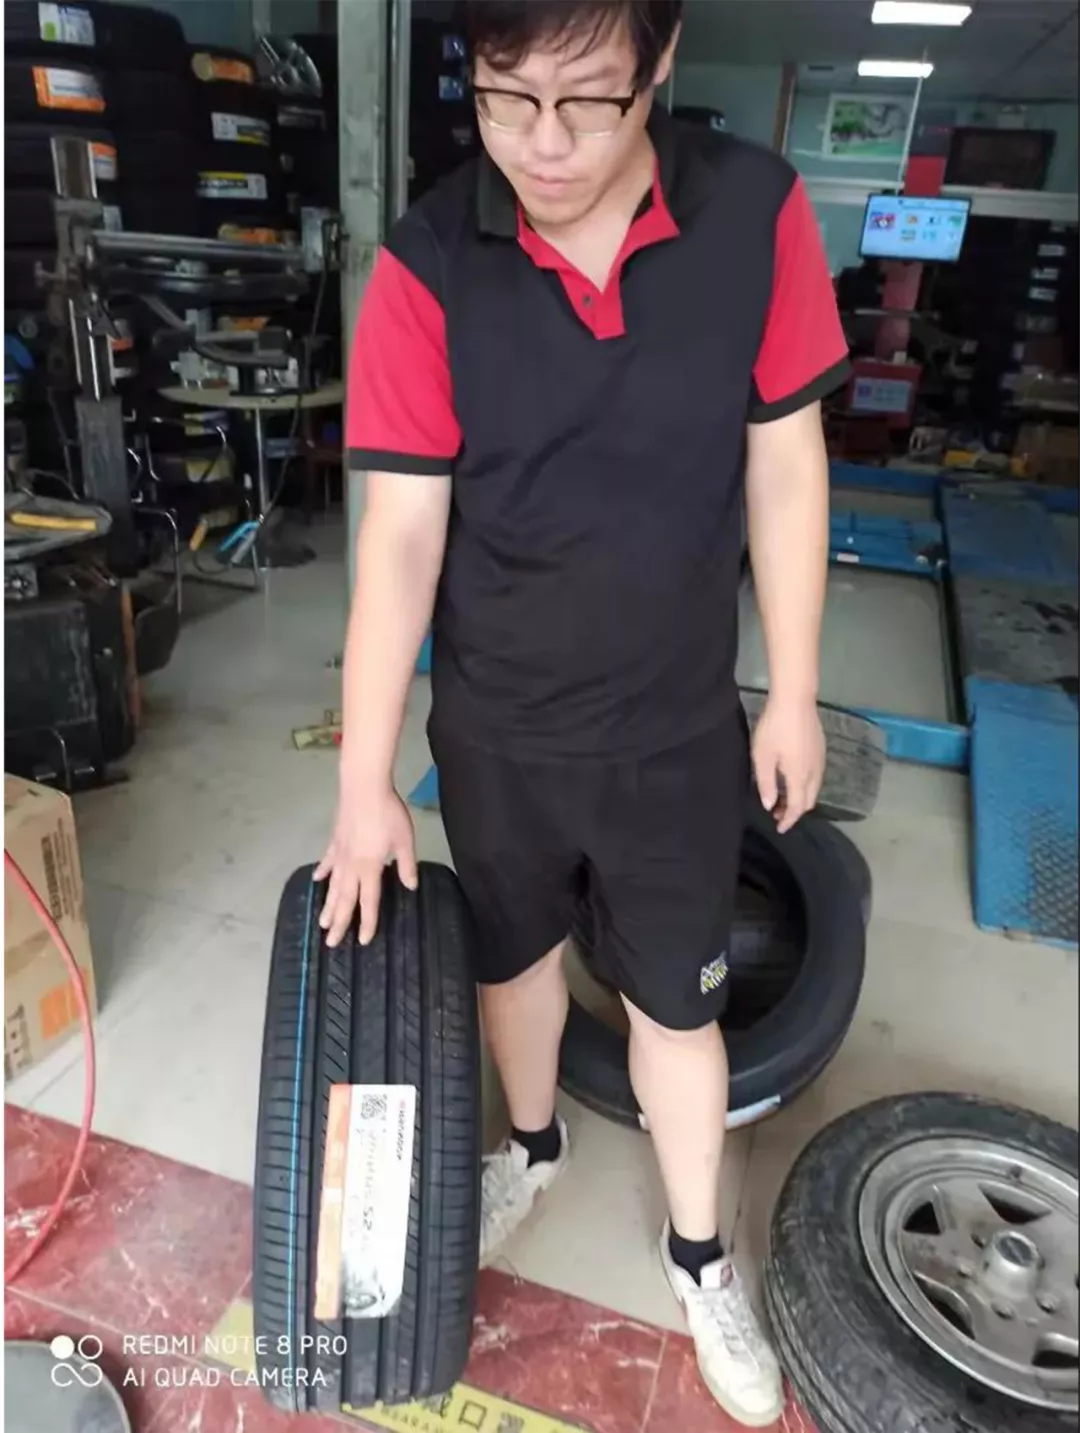 “胎软”、“噪音低”，韩泰轮胎获众测店主一致好评